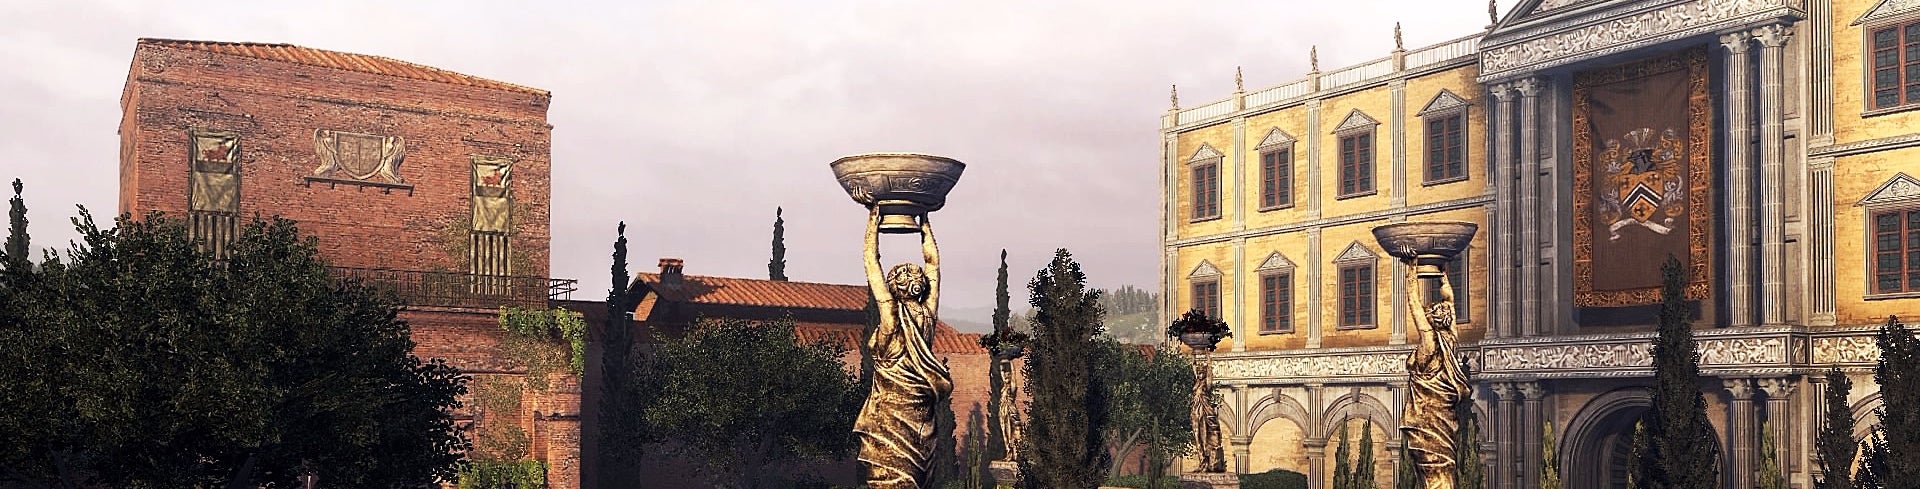 Immagine di Nell'Italia rinascimentale di Assassin's Creed c'è altro al di là delle apparenze - articolo